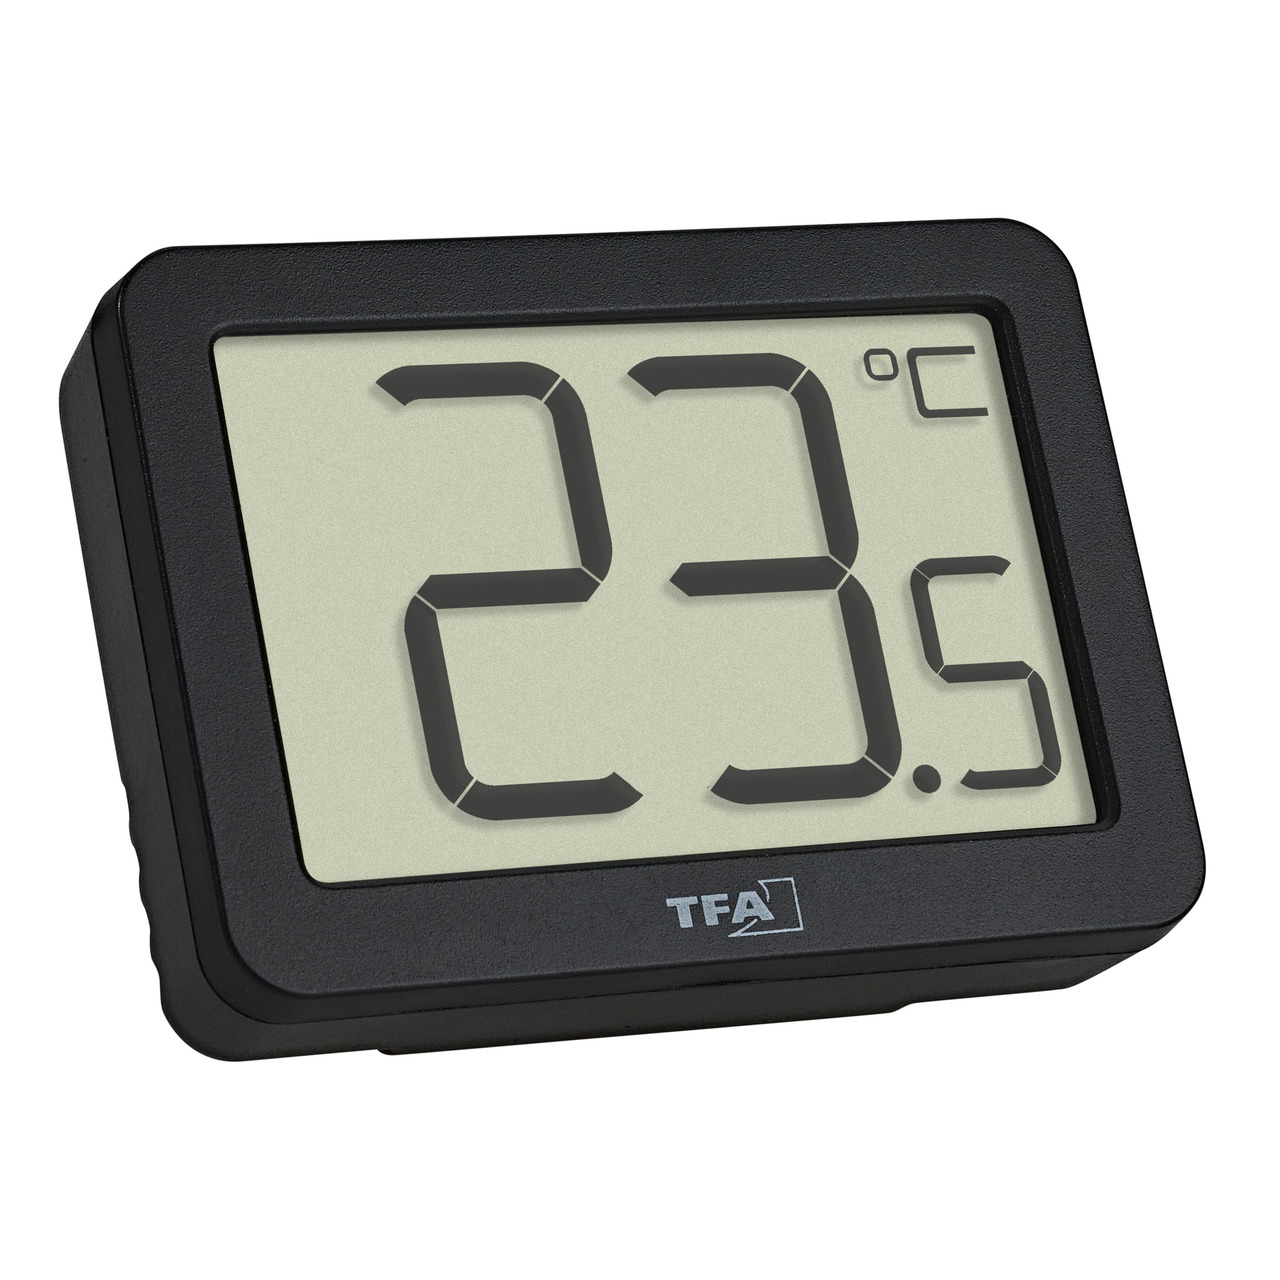 TFA Digitales Thermometer fr Raumtemperatur-Erfassung- Magnetmontage- kompakt- schwarz unter Klima - Wetter - Umwelt